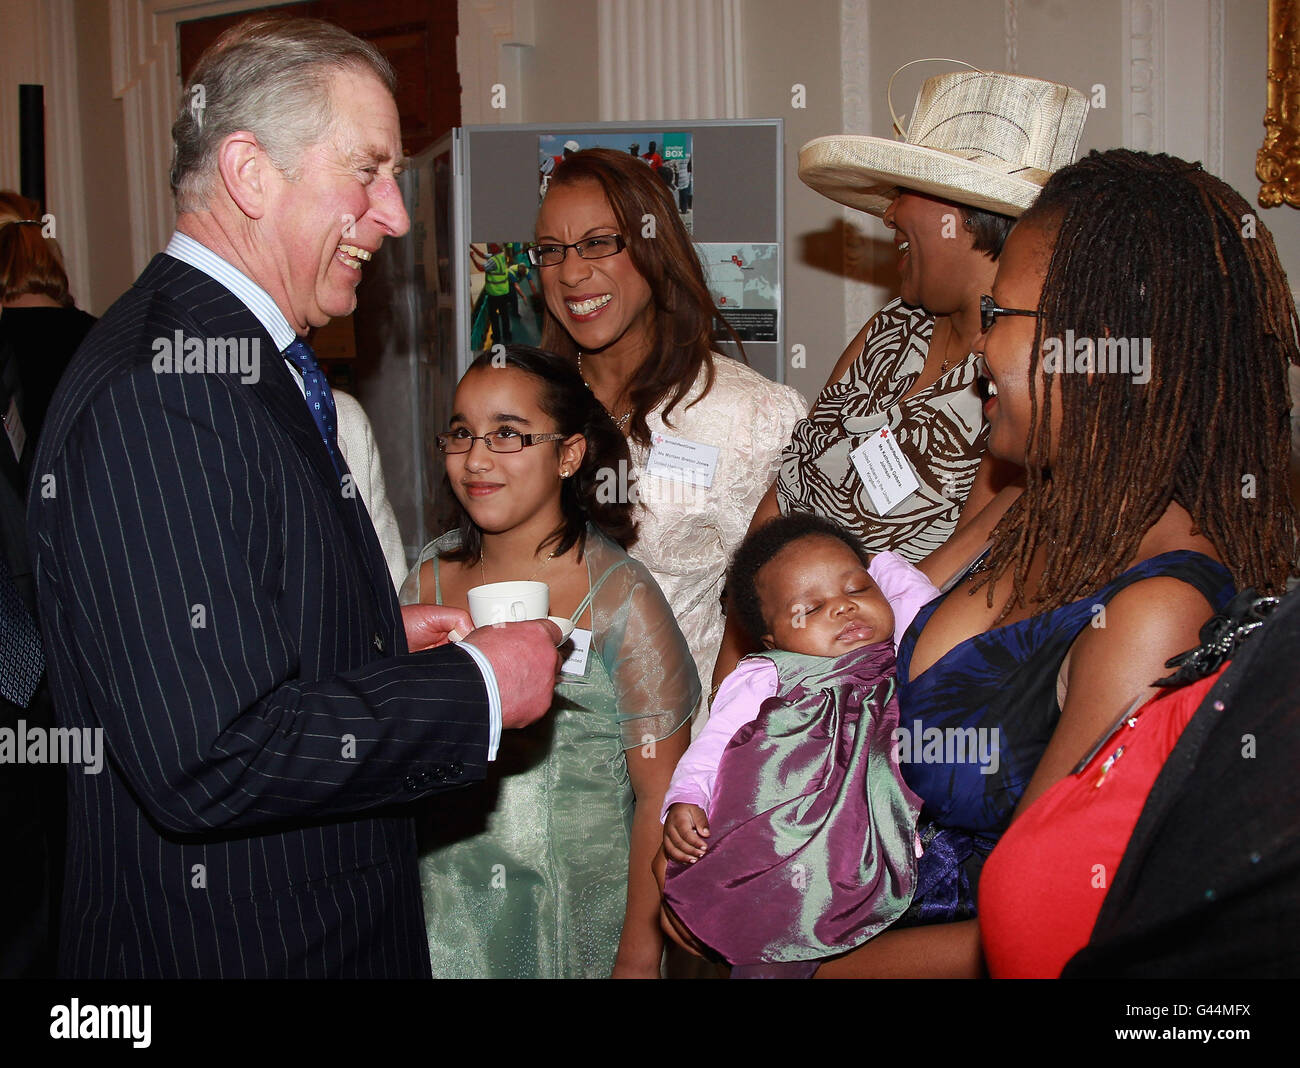 Il principe del Galles incontra i membri del gruppo britannico haitiani nel corso di un ricevimento della Croce Rossa a Mansion House, Londra, per ringraziare i volontari e i donatori i cui sforzi stanno contribuendo alla ricostruzione del paese dopo il disastro del gennaio 2010. Foto Stock